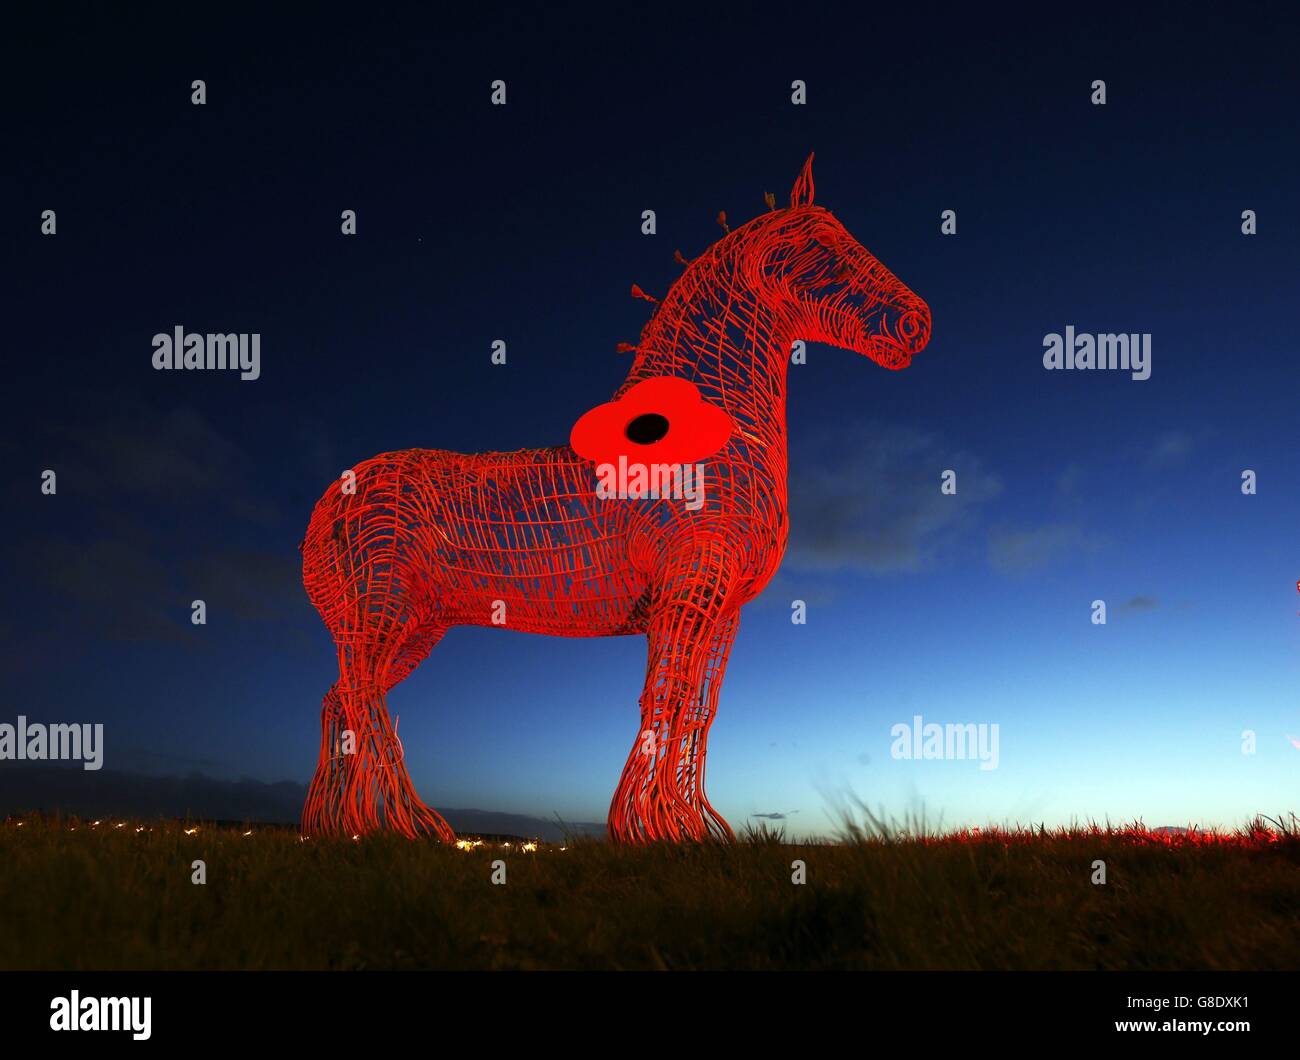 Die Statue des schweren Pferdes in Baillieston auf der M8 in Schottland, vom figurativen Bildhauer Andy Scott, wird mit einem roten Licht beleuchtet, um den diesjährigen Scottish Poppy Appeal zu markieren. Stockfoto